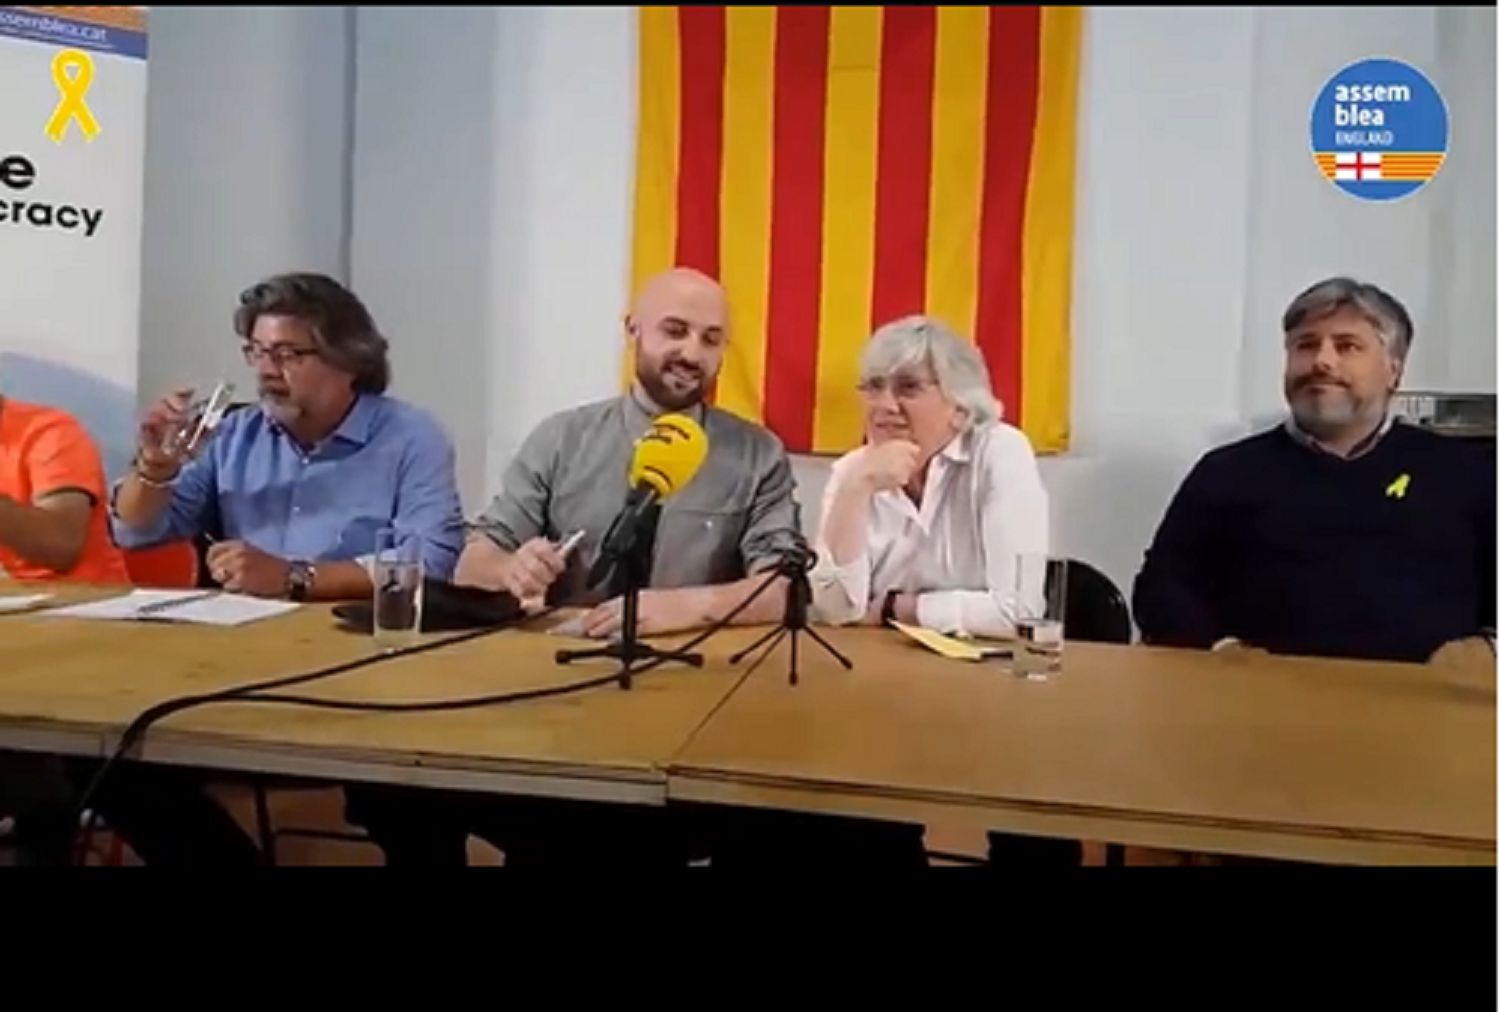 Clara Ponsatí reclama "nous lideratges" en l'independentisme